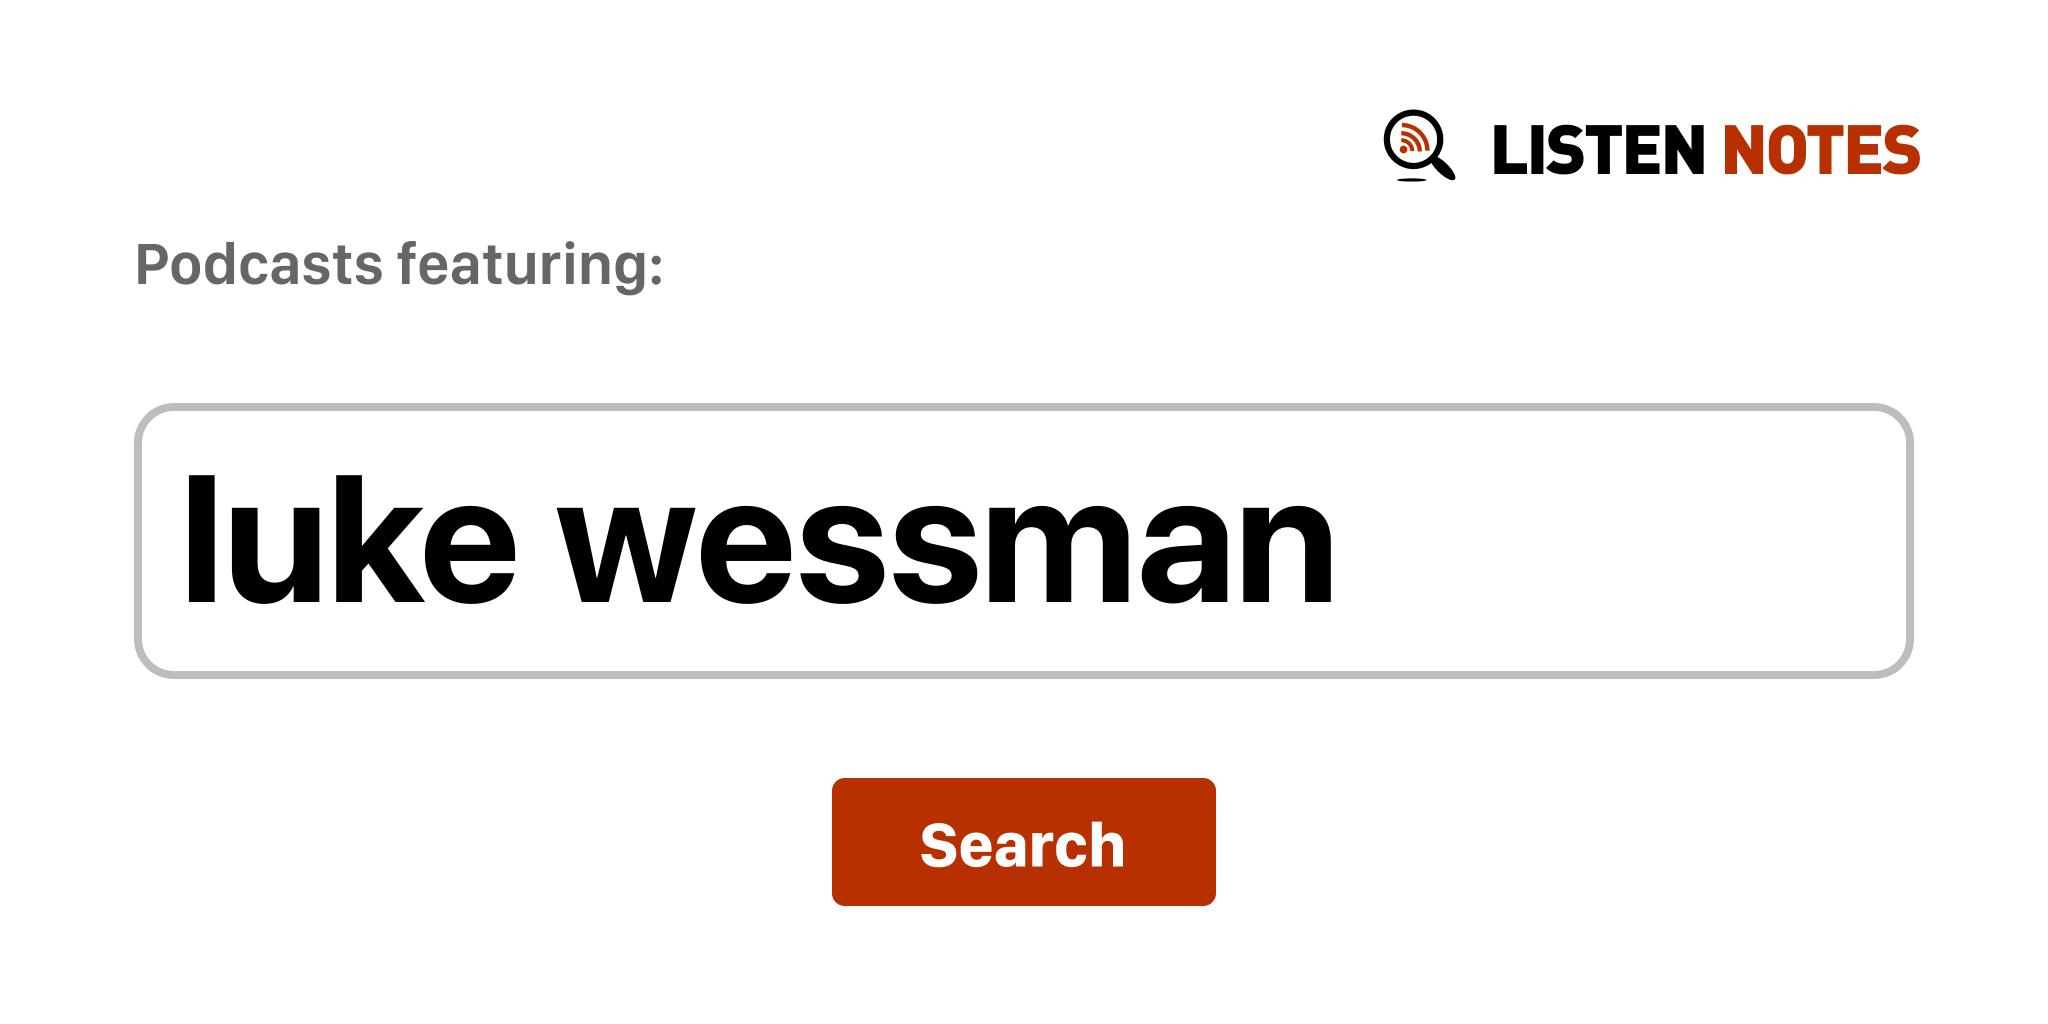 Luke Wessman - Wikipedia